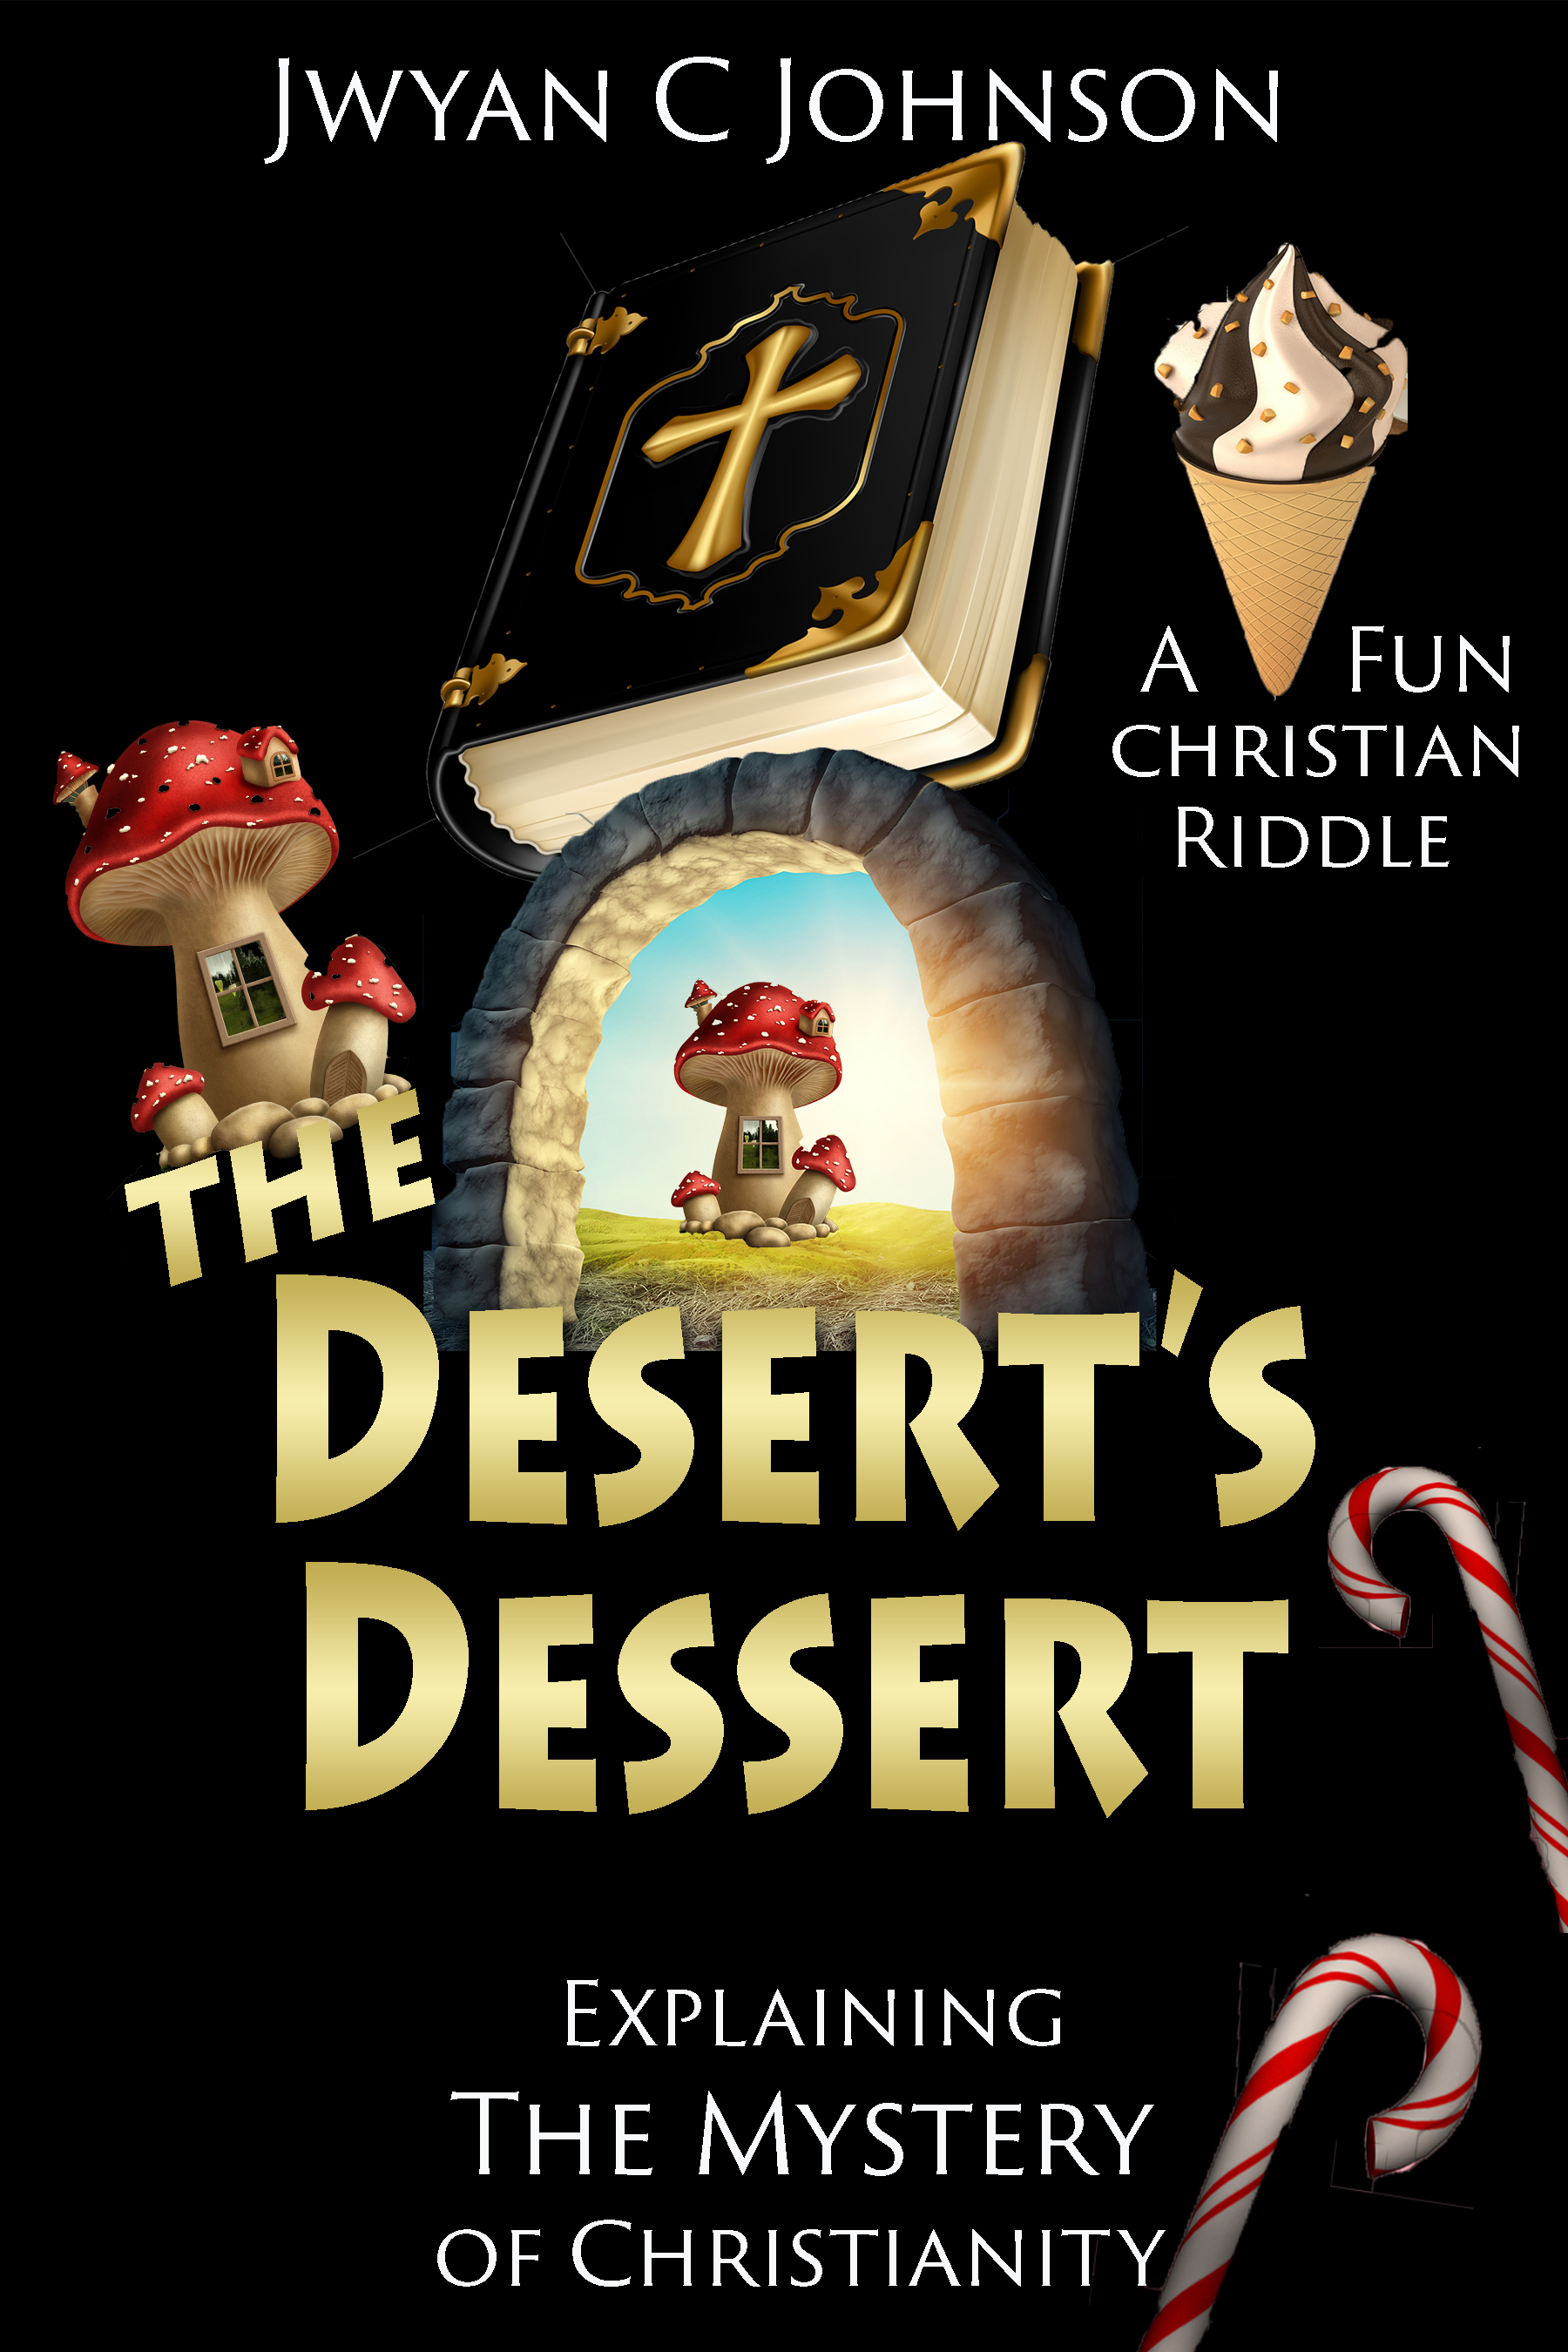 The Parable of The Desert's Dessert